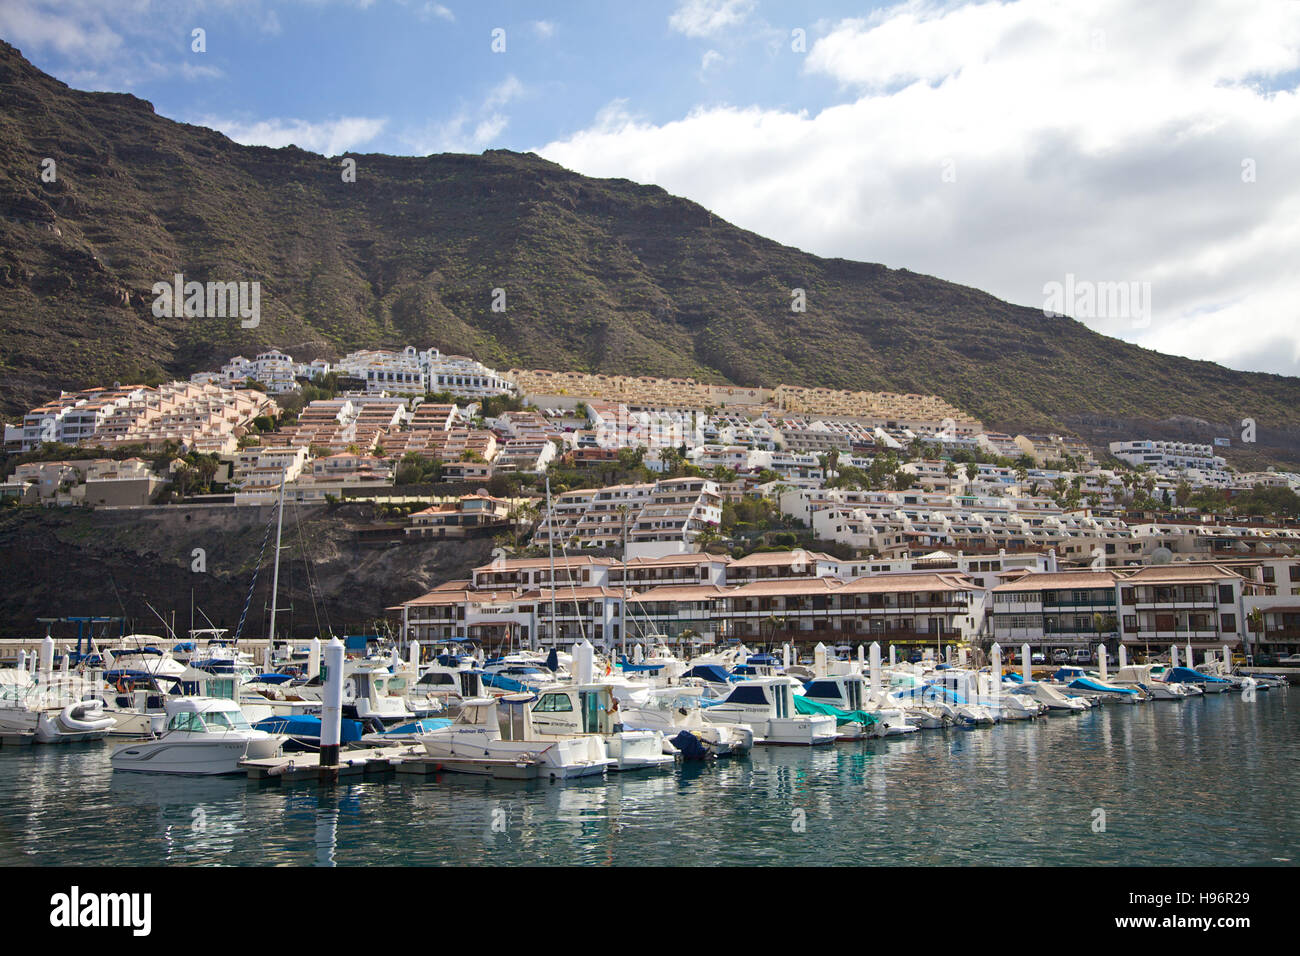 Harbour and housing area in Puerto de Santiago, Tenerife, Spain Stock Photo